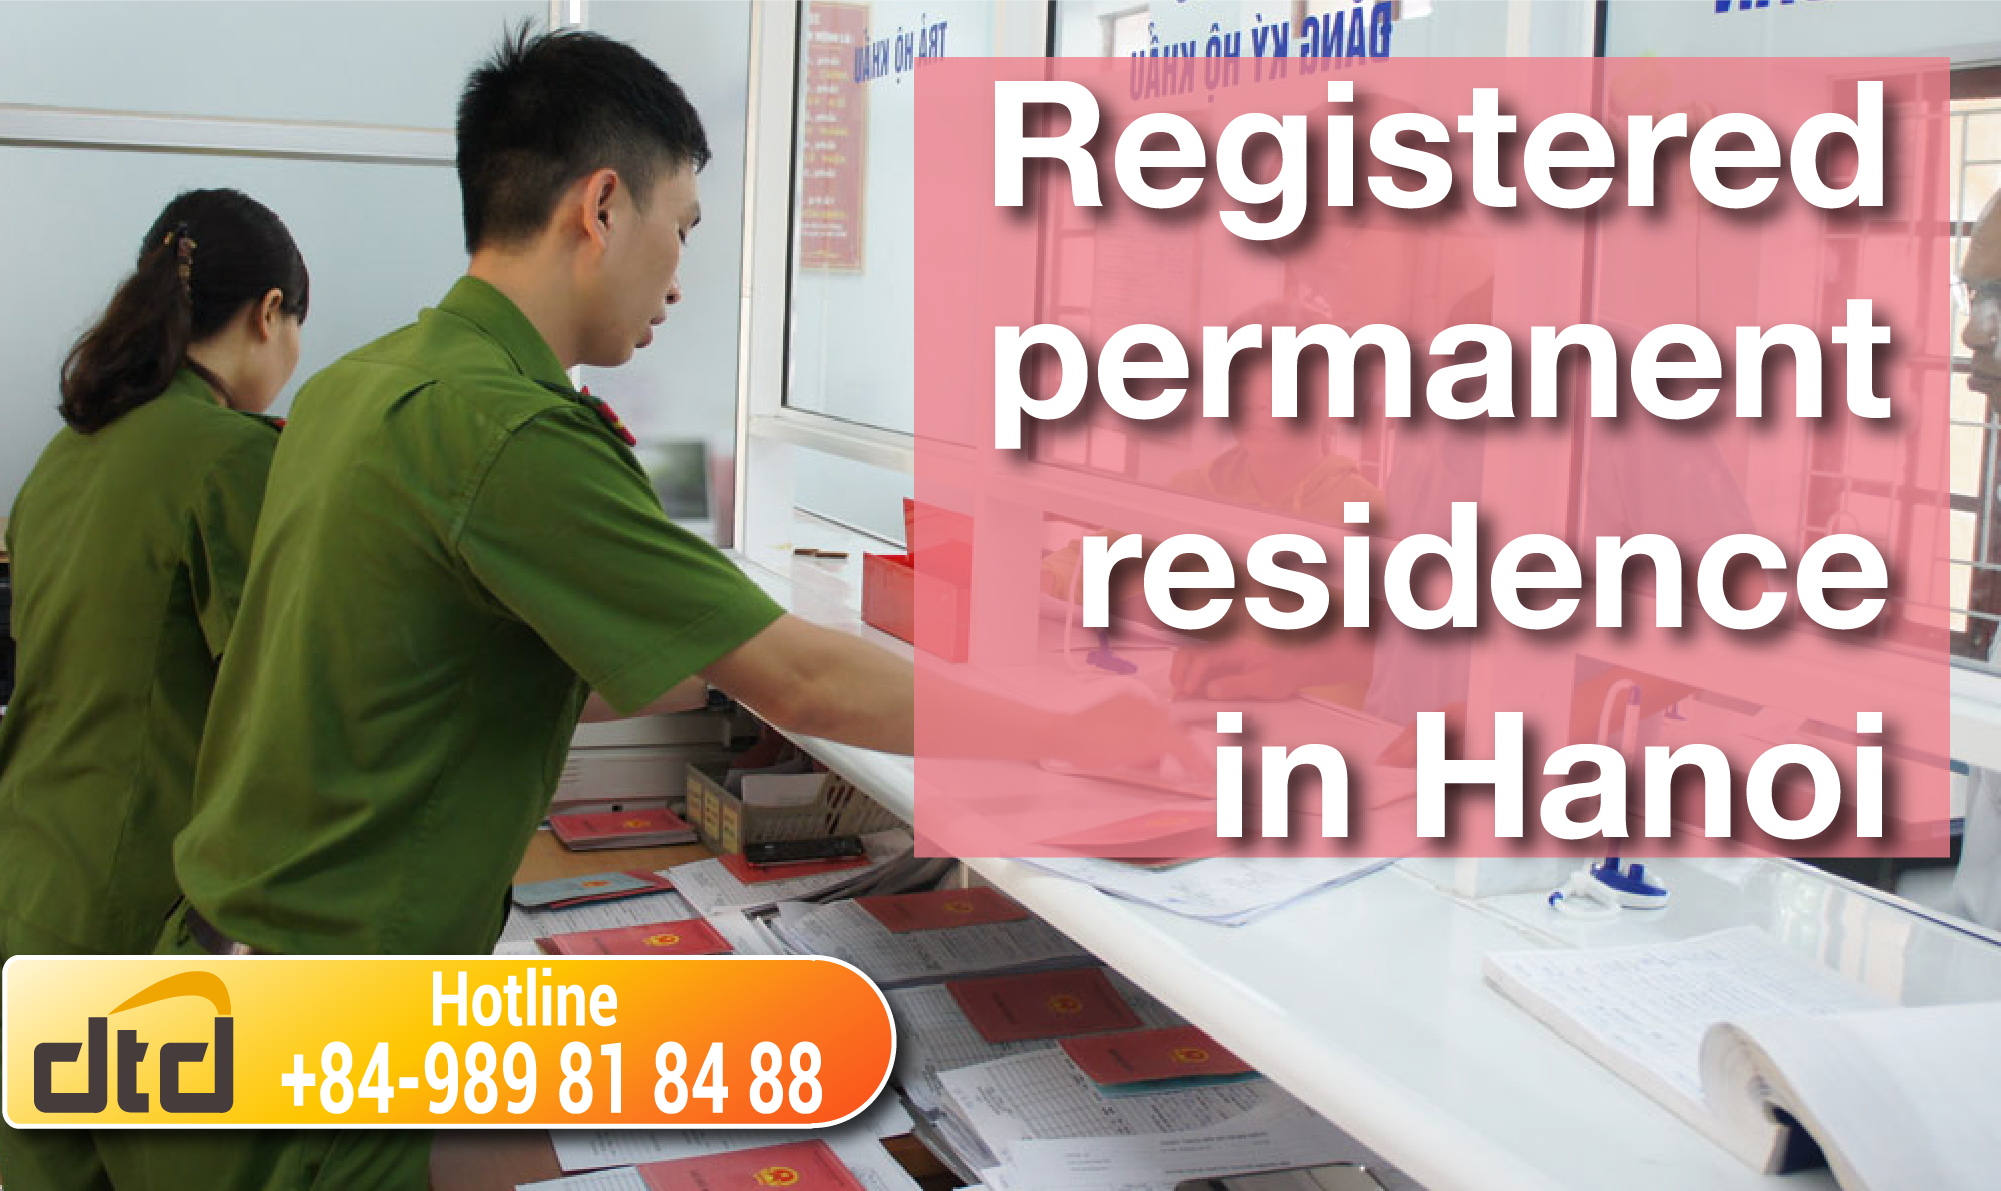 Registered permanent residence in Hanoi